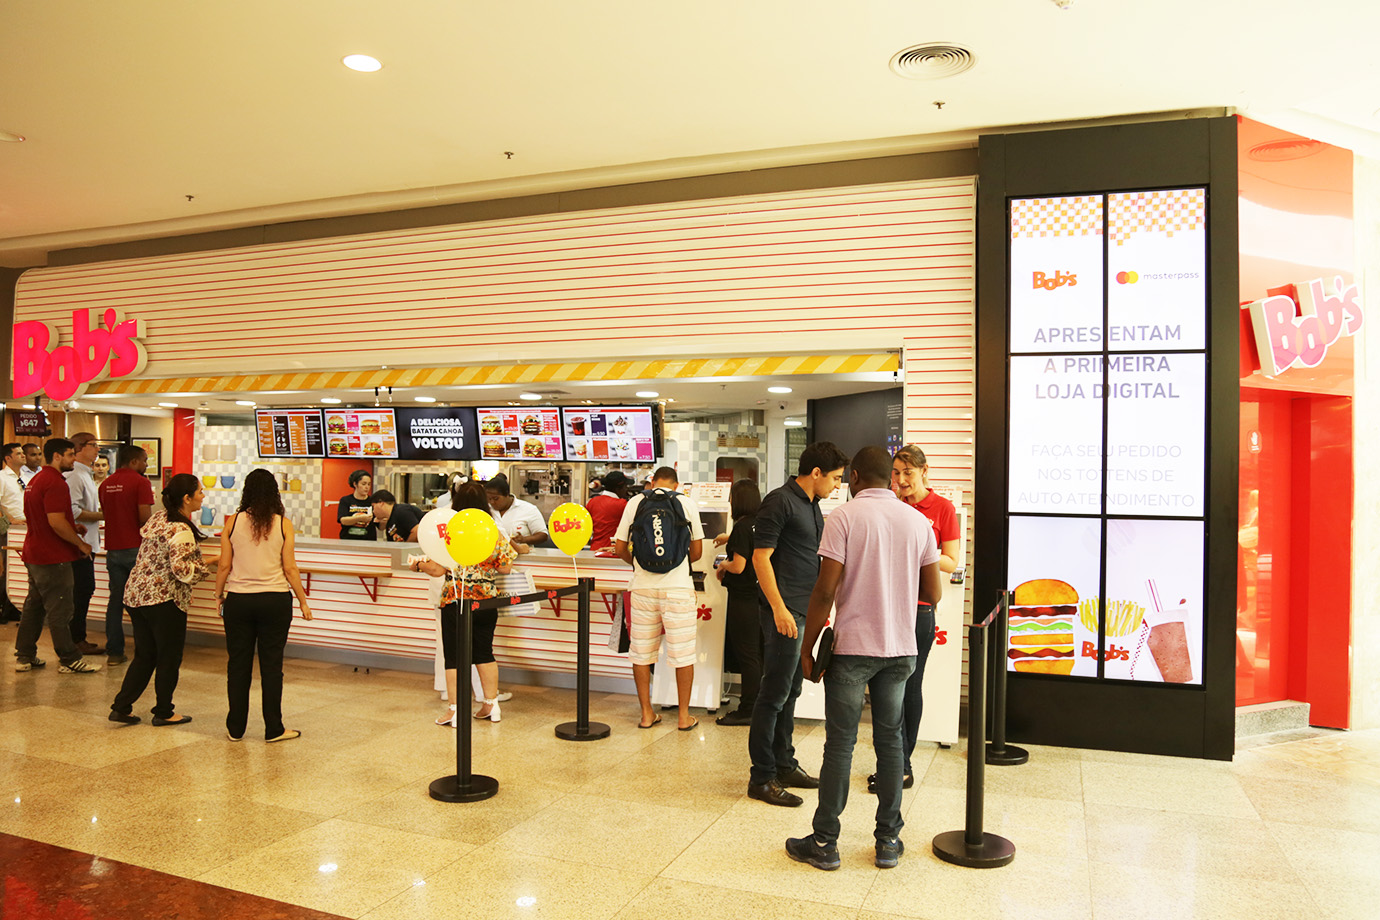 Loja com atendimento 100% digital do Bob's, no Barra Shopping (RJ): rede chegará a três lojas nesse formato em 2017